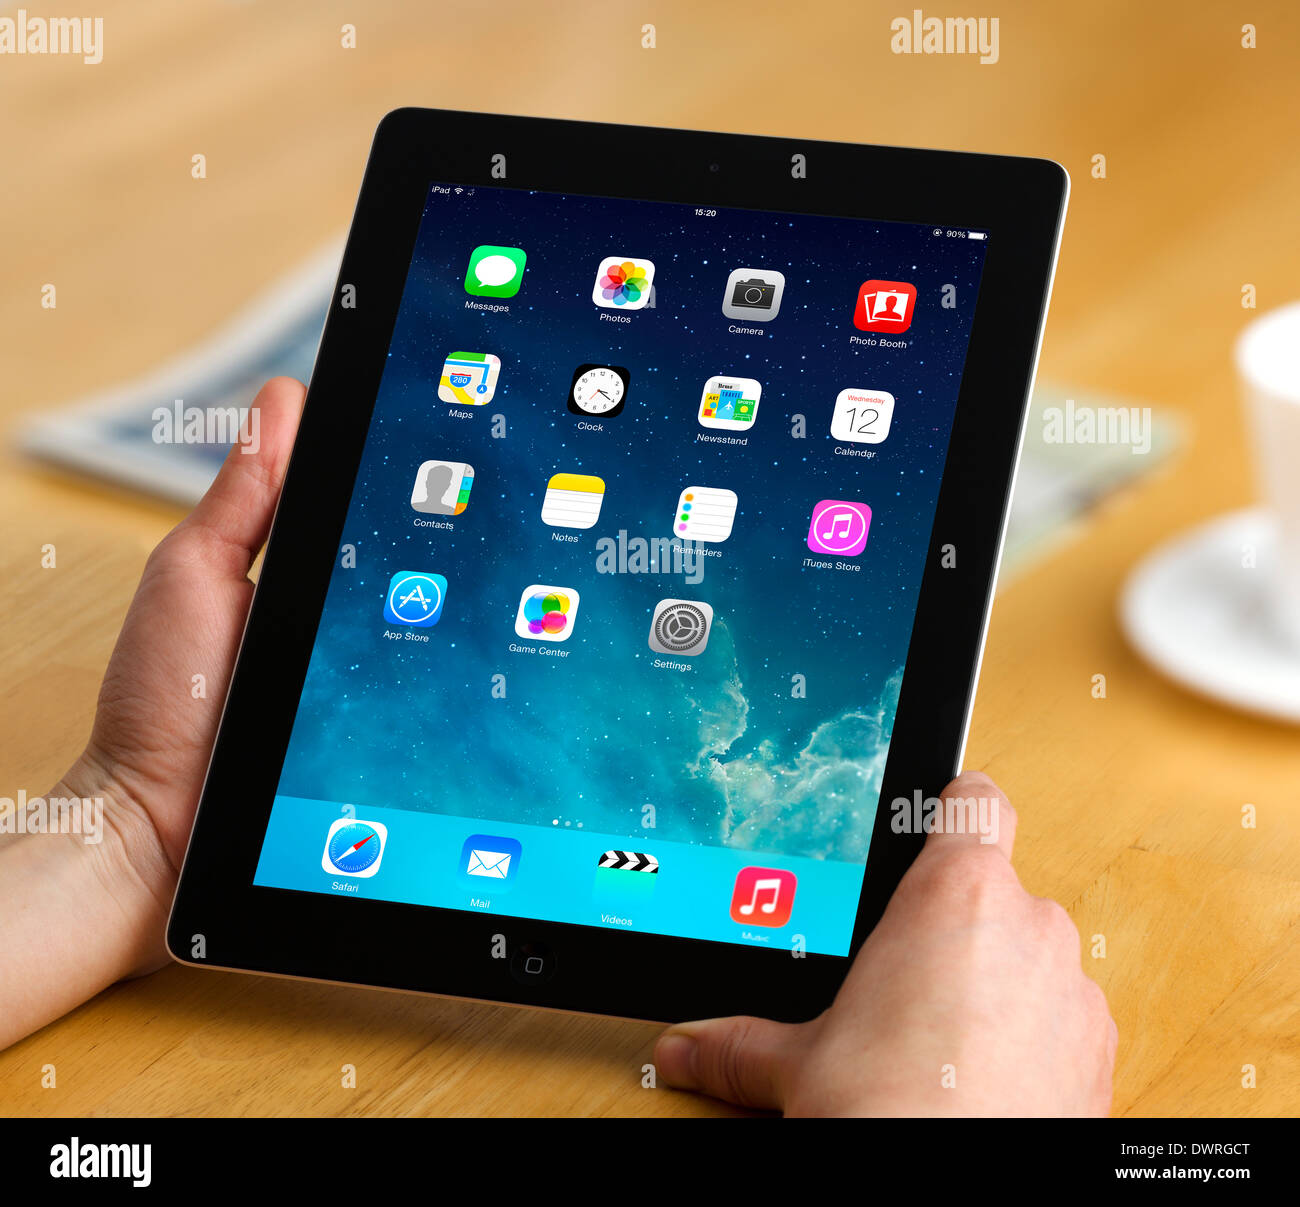 IOS 7.1 écran d'accueil sur un Apple iPad 4e génération retina display tablet computer Banque D'Images